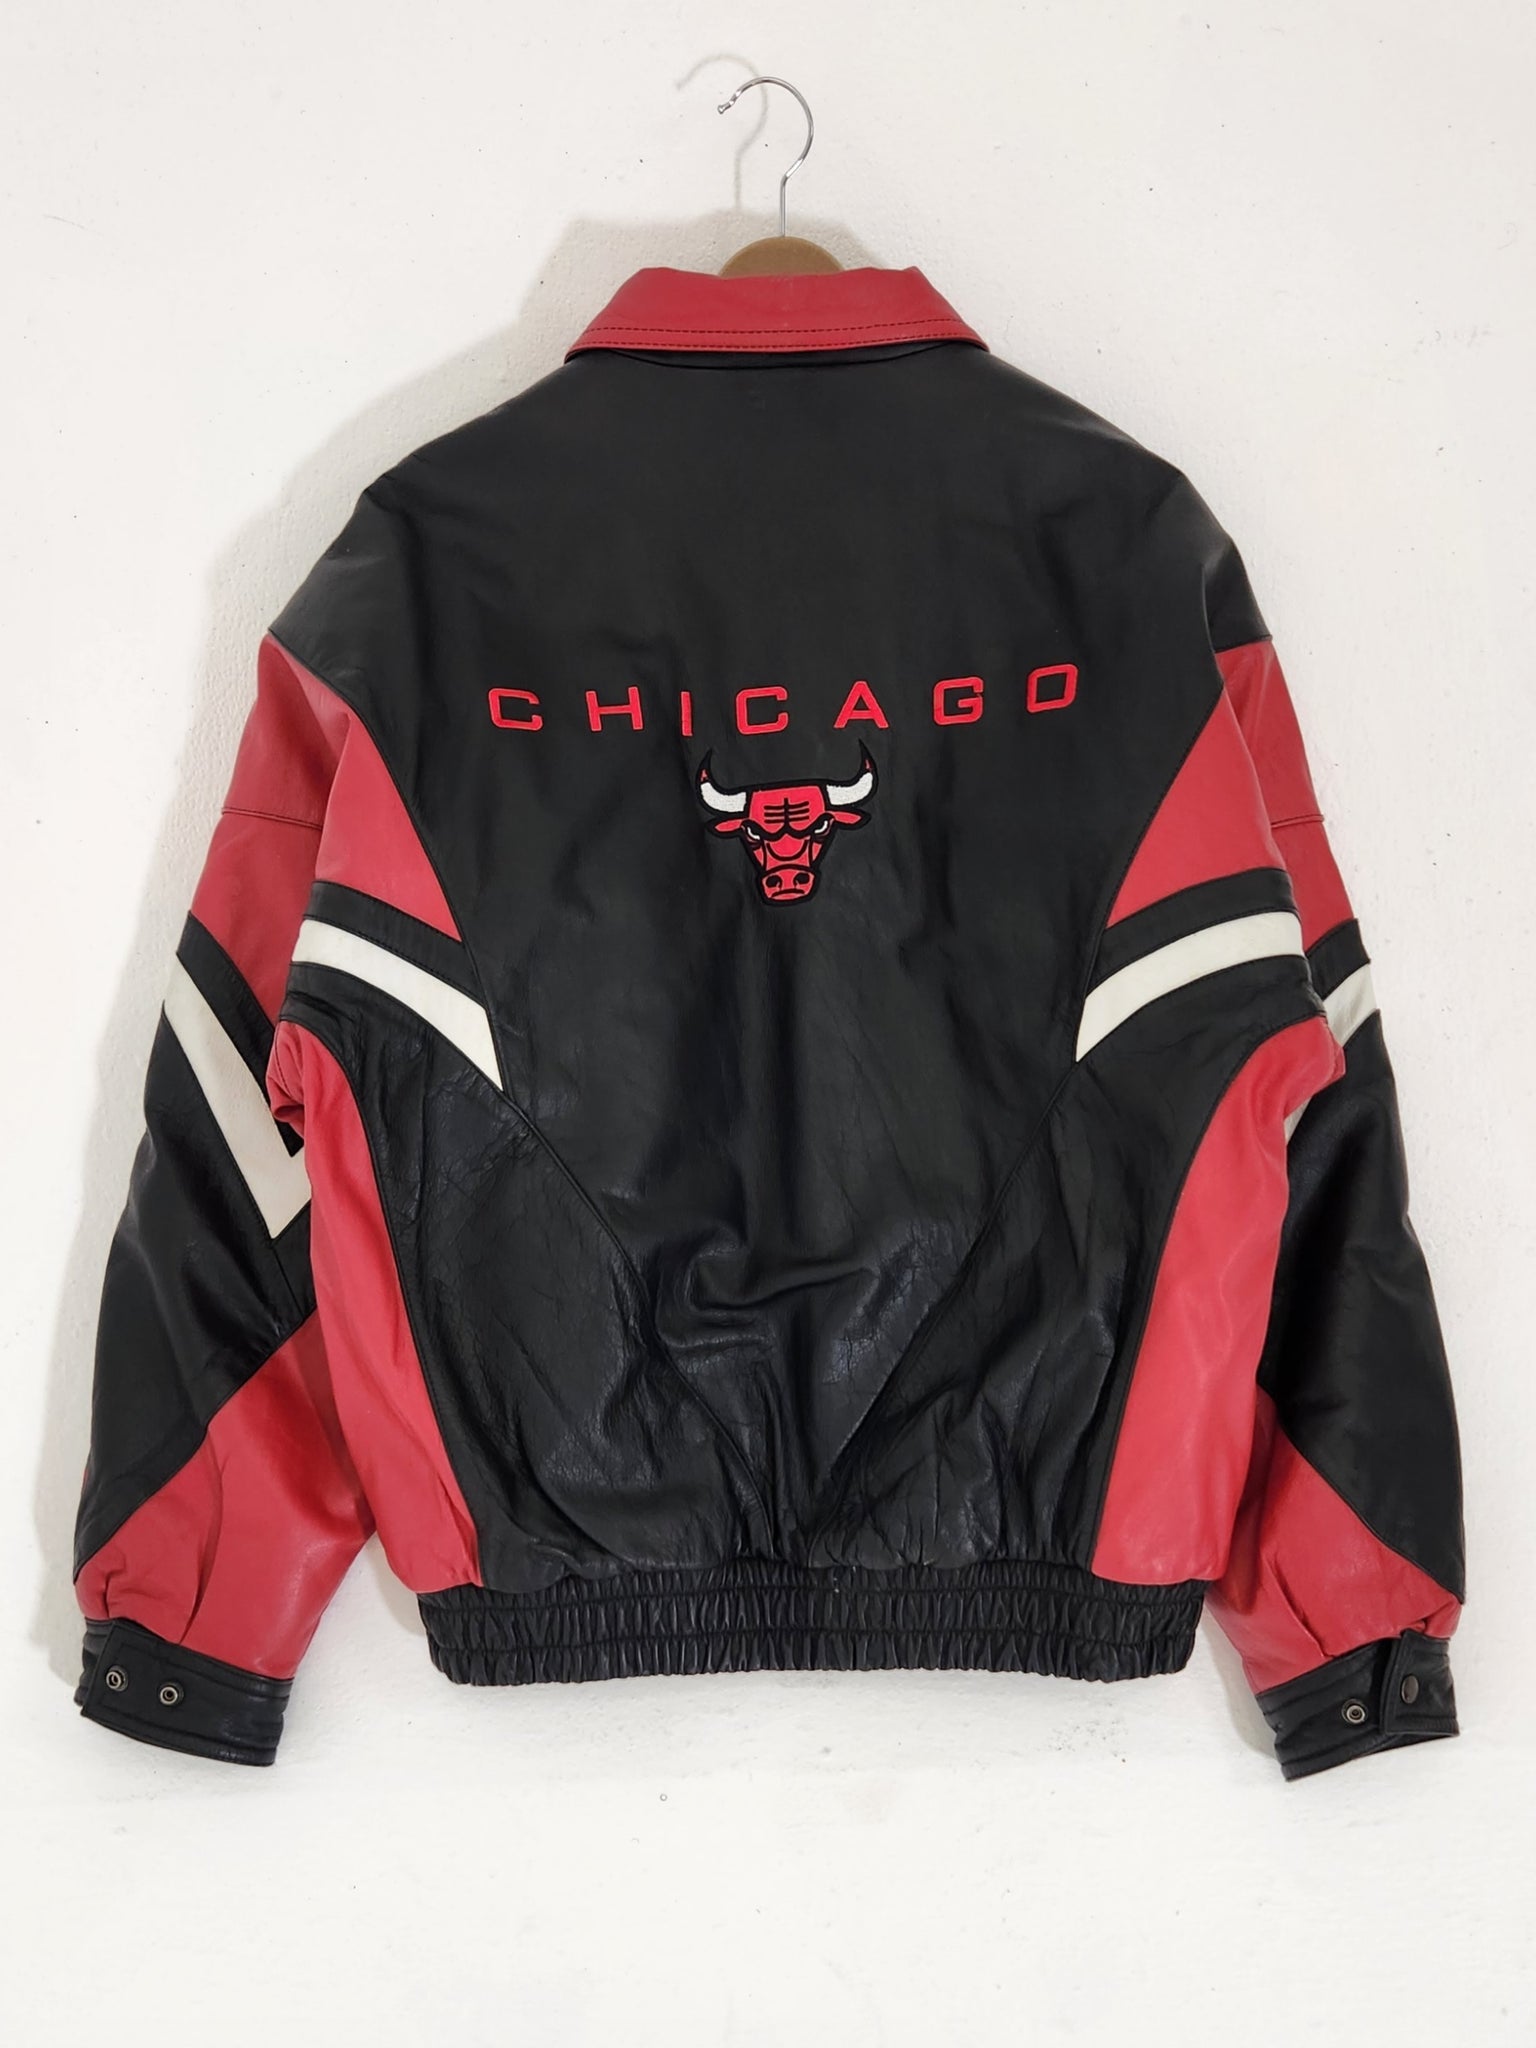 Vintage 90s NBA Chicago Bulls Starter Jacket